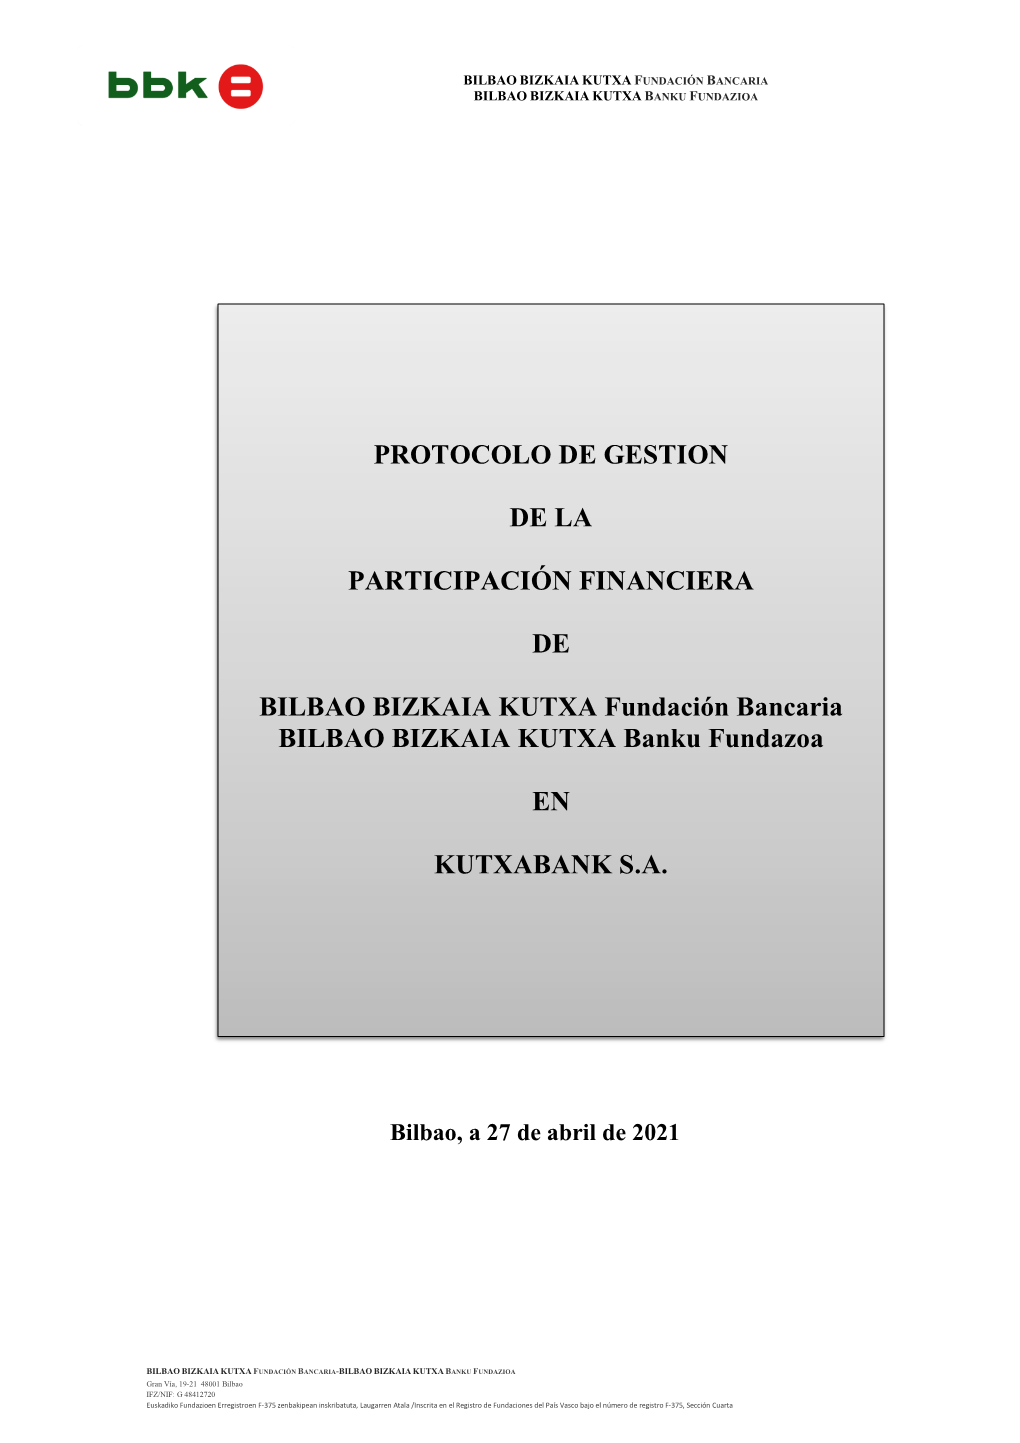 Protocolo De Gestión De La Participación Financiera En Kutxabank, S.A